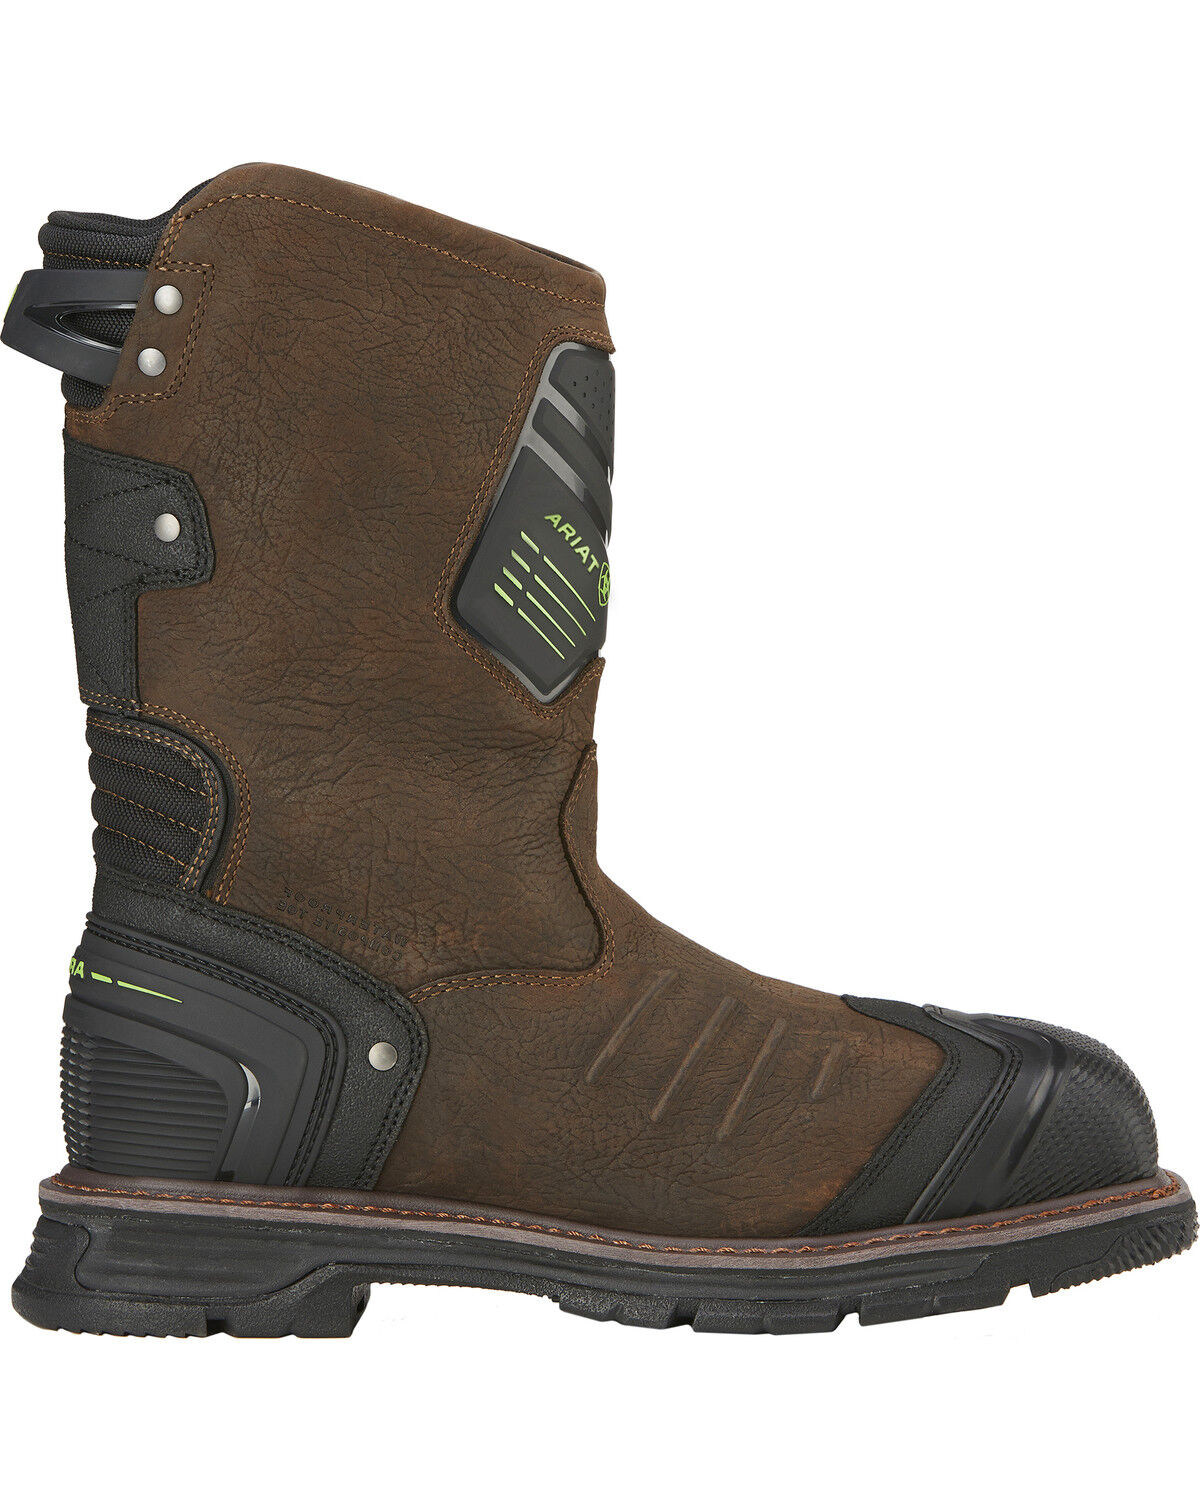 men's waterproof composite toe work boots